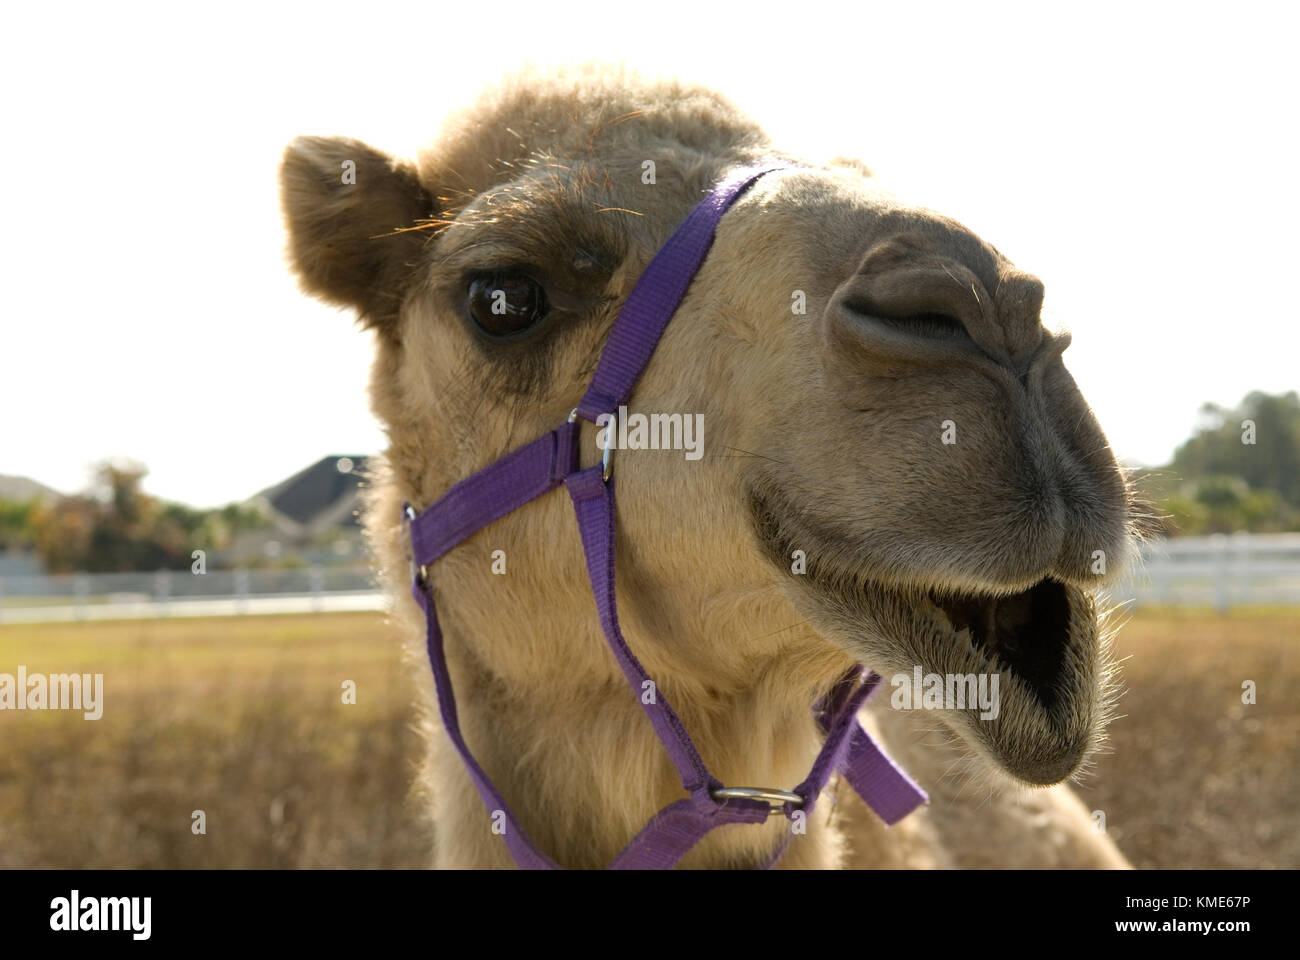 Smiling Camel, États-Unis. Banque D'Images